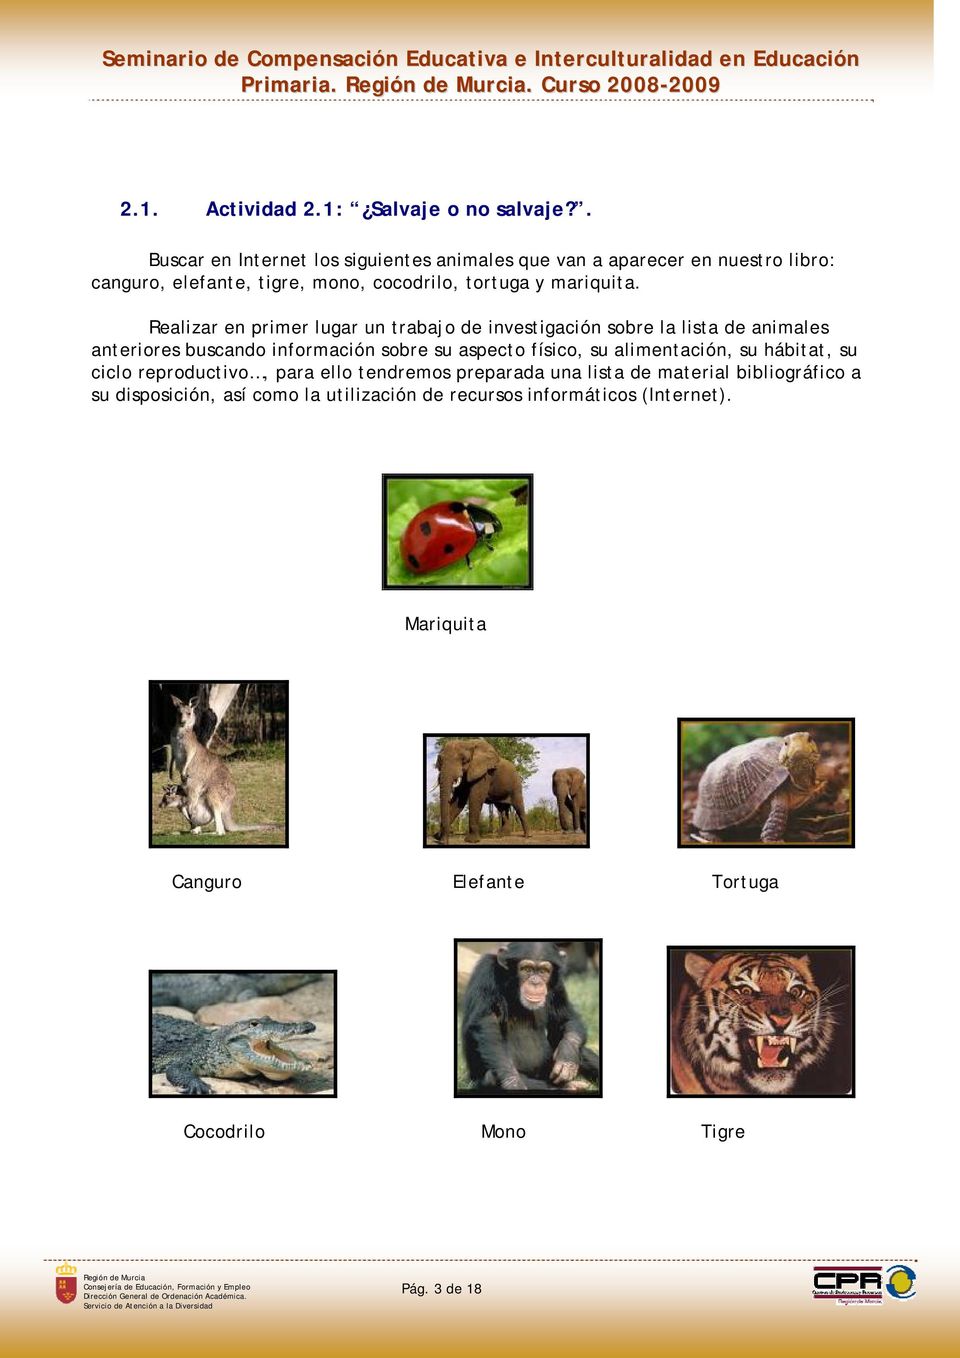 Realizar en primer lugar un trabajo de investigación sobre la lista de animales anteriores buscando información sobre su aspecto físico, su alimentación,